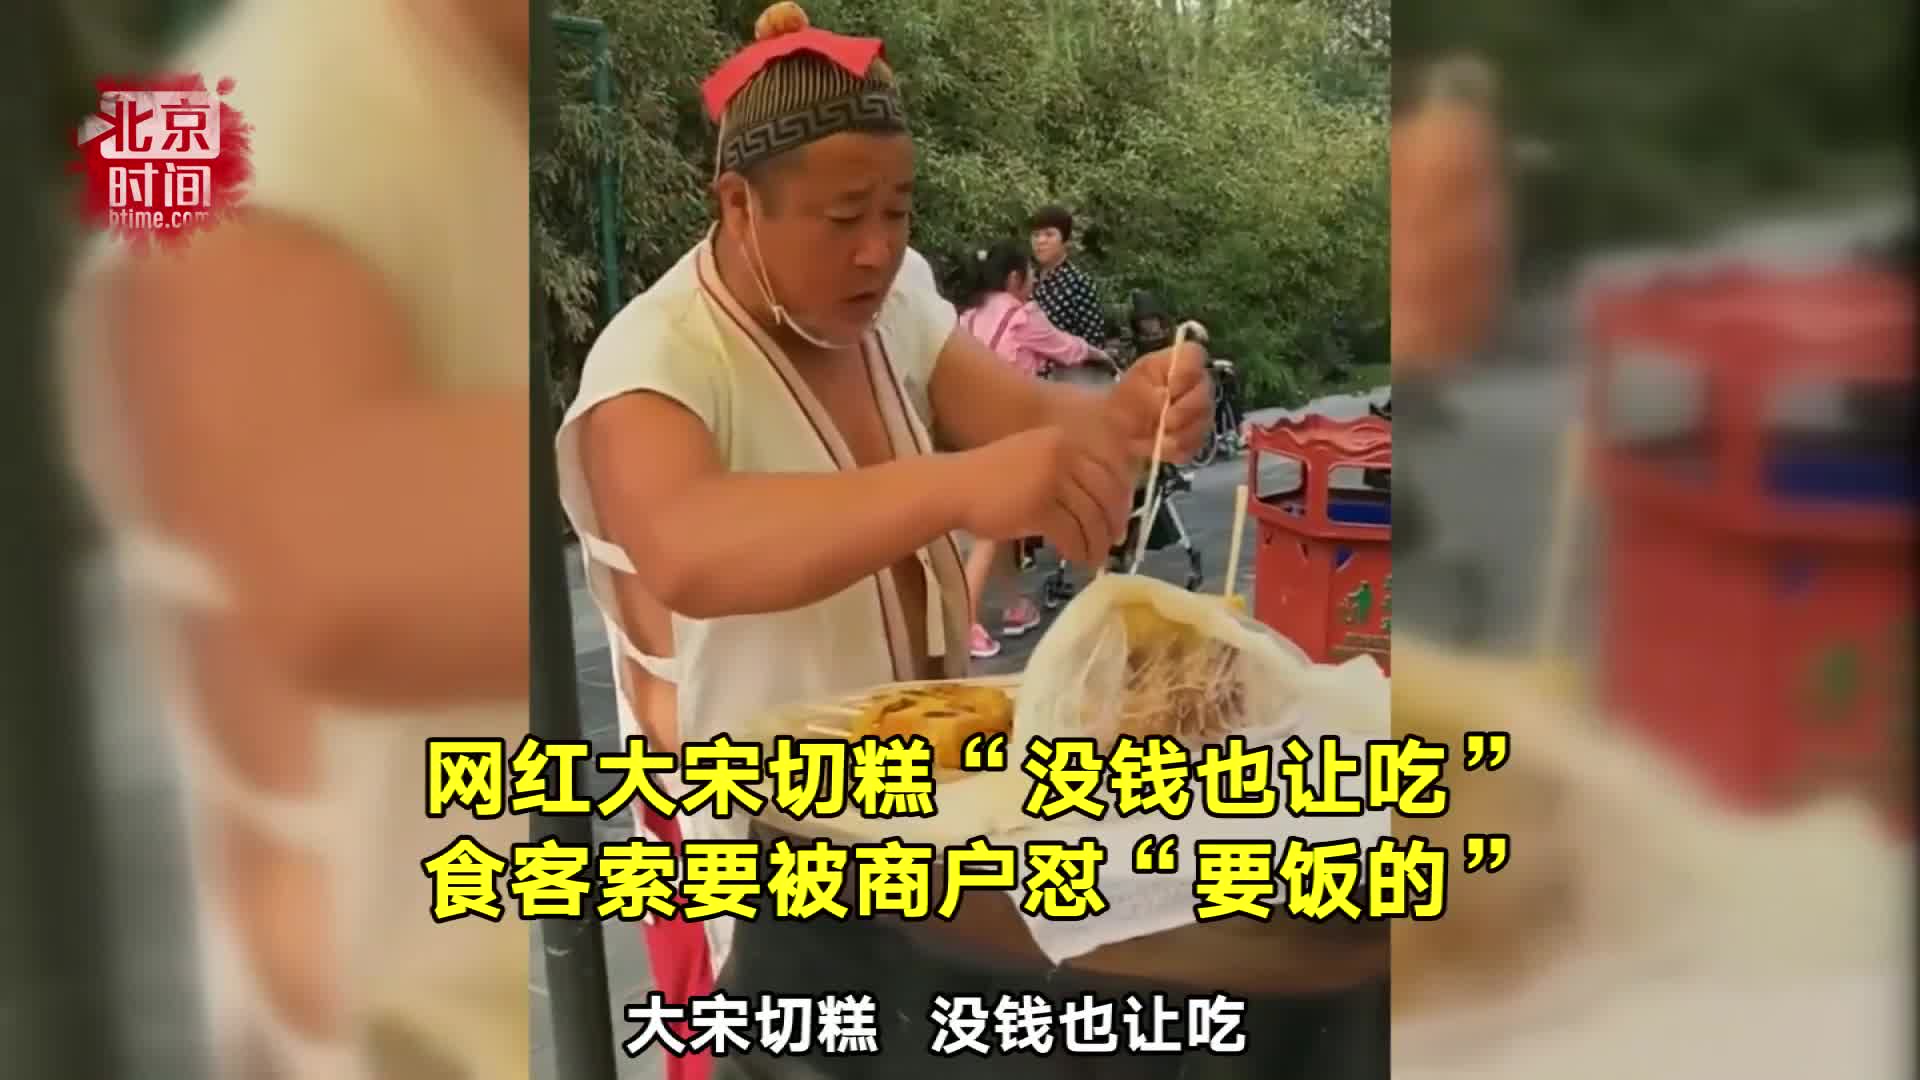 [视频]网红大宋切糕称“没钱也让吃” 食客被怼“要饭的”